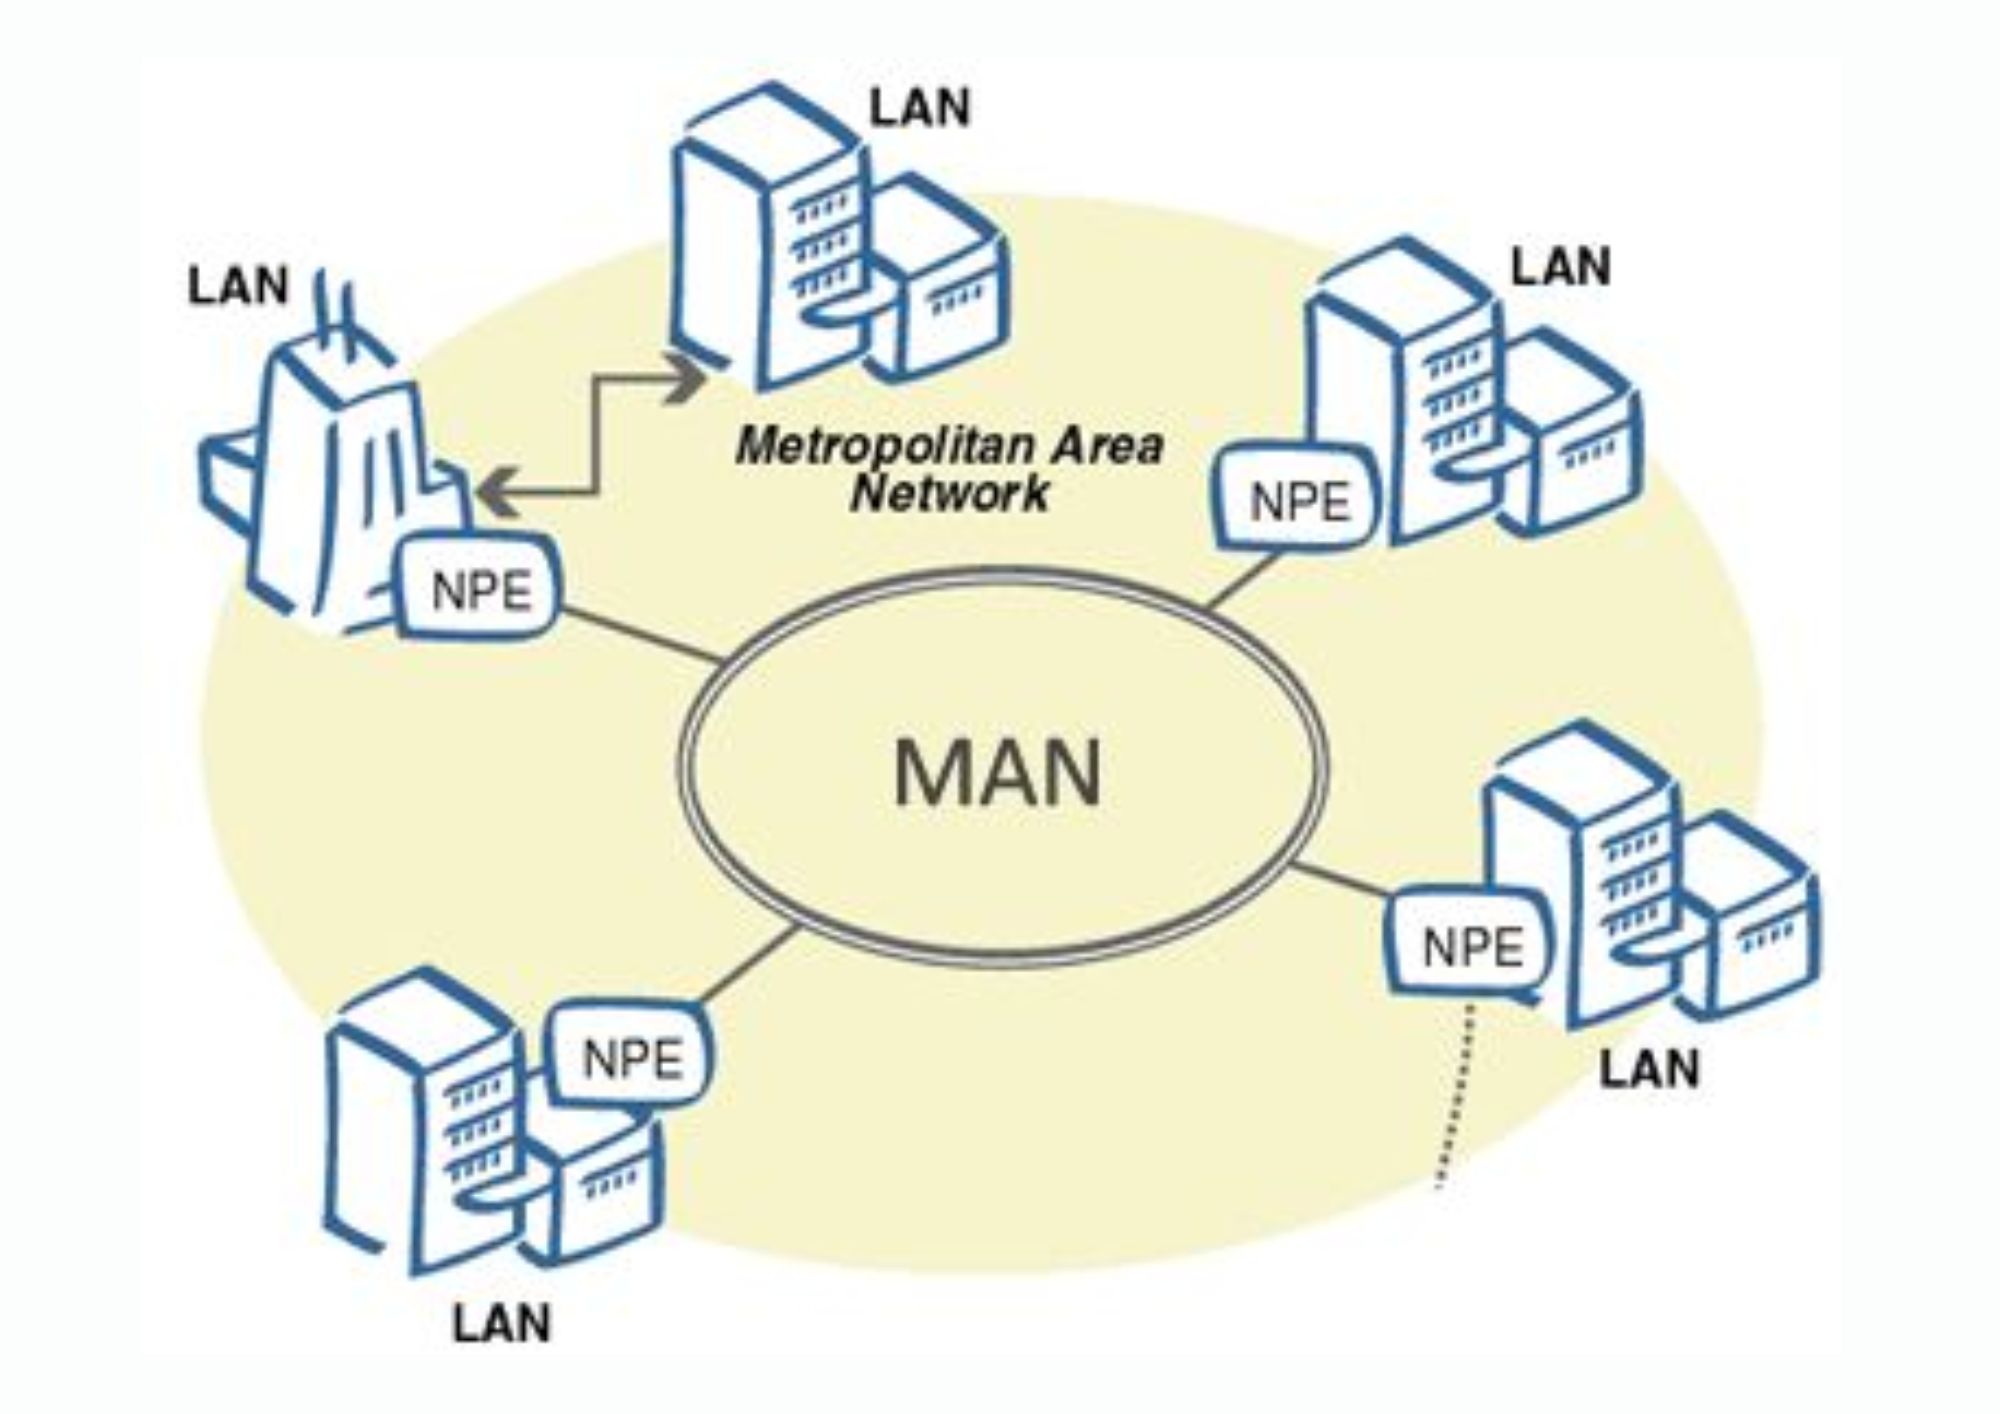 मेट्रोपॉलिटन एरिया नेटवर्क क्या है? - (Metropolitan Area Network In Hindi)